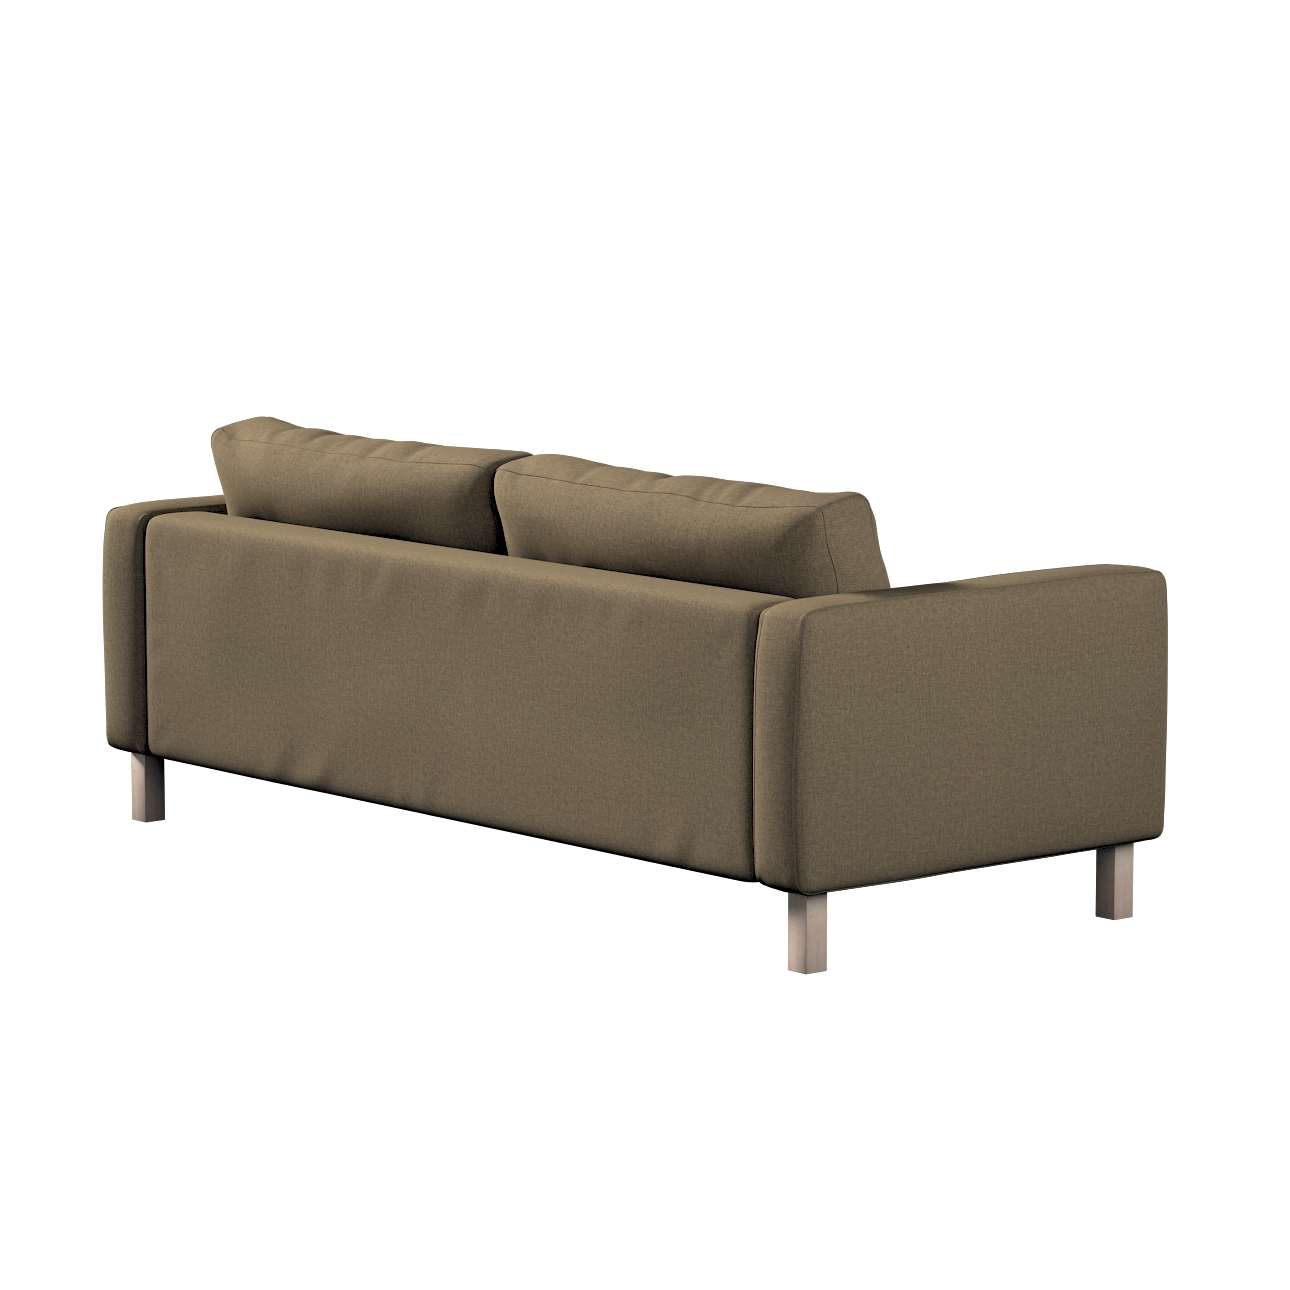 Bezug für Karlstad 3-Sitzer Sofa nicht ausklappbar, kurz, grau-braun, Bezug günstig online kaufen